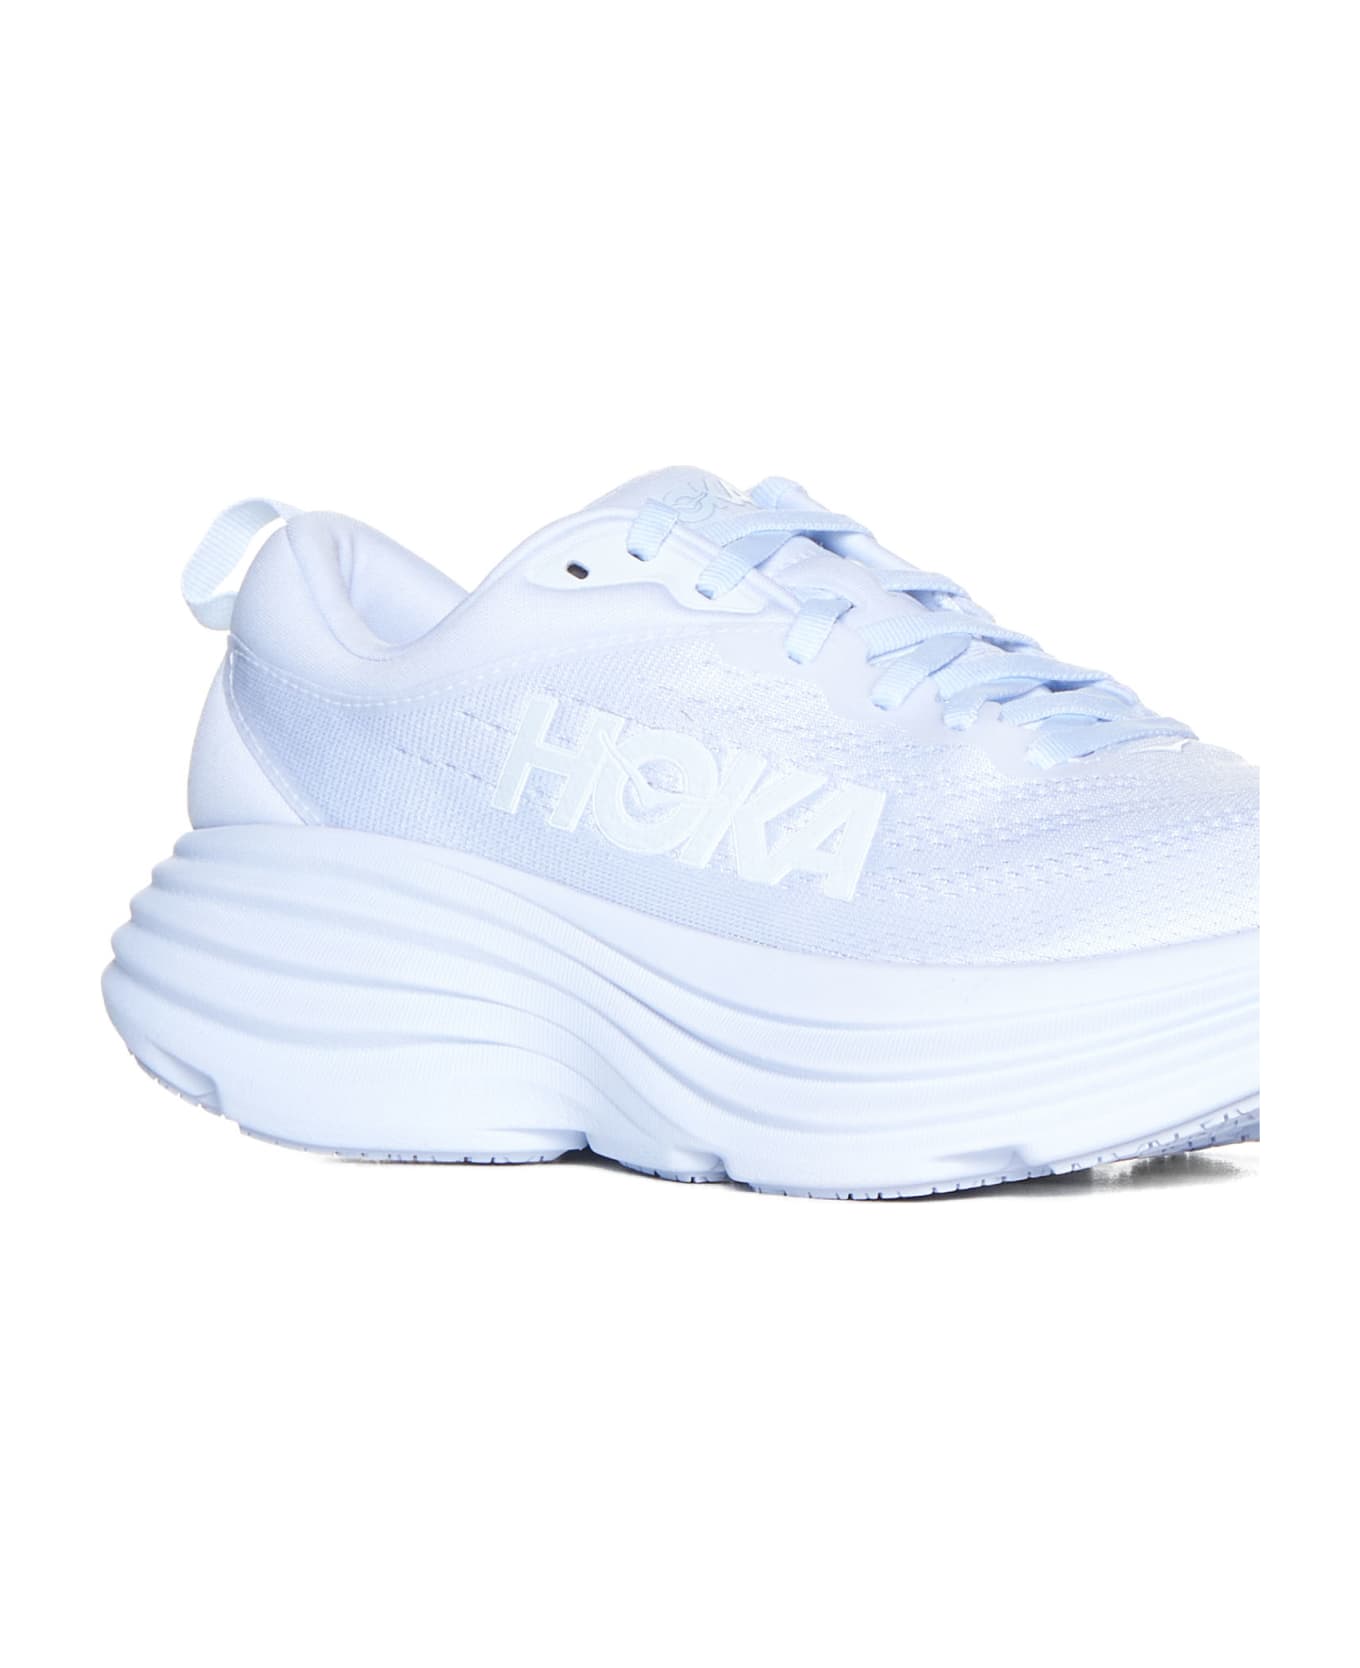 Hoka Sneakers - White white ウェッジシューズ